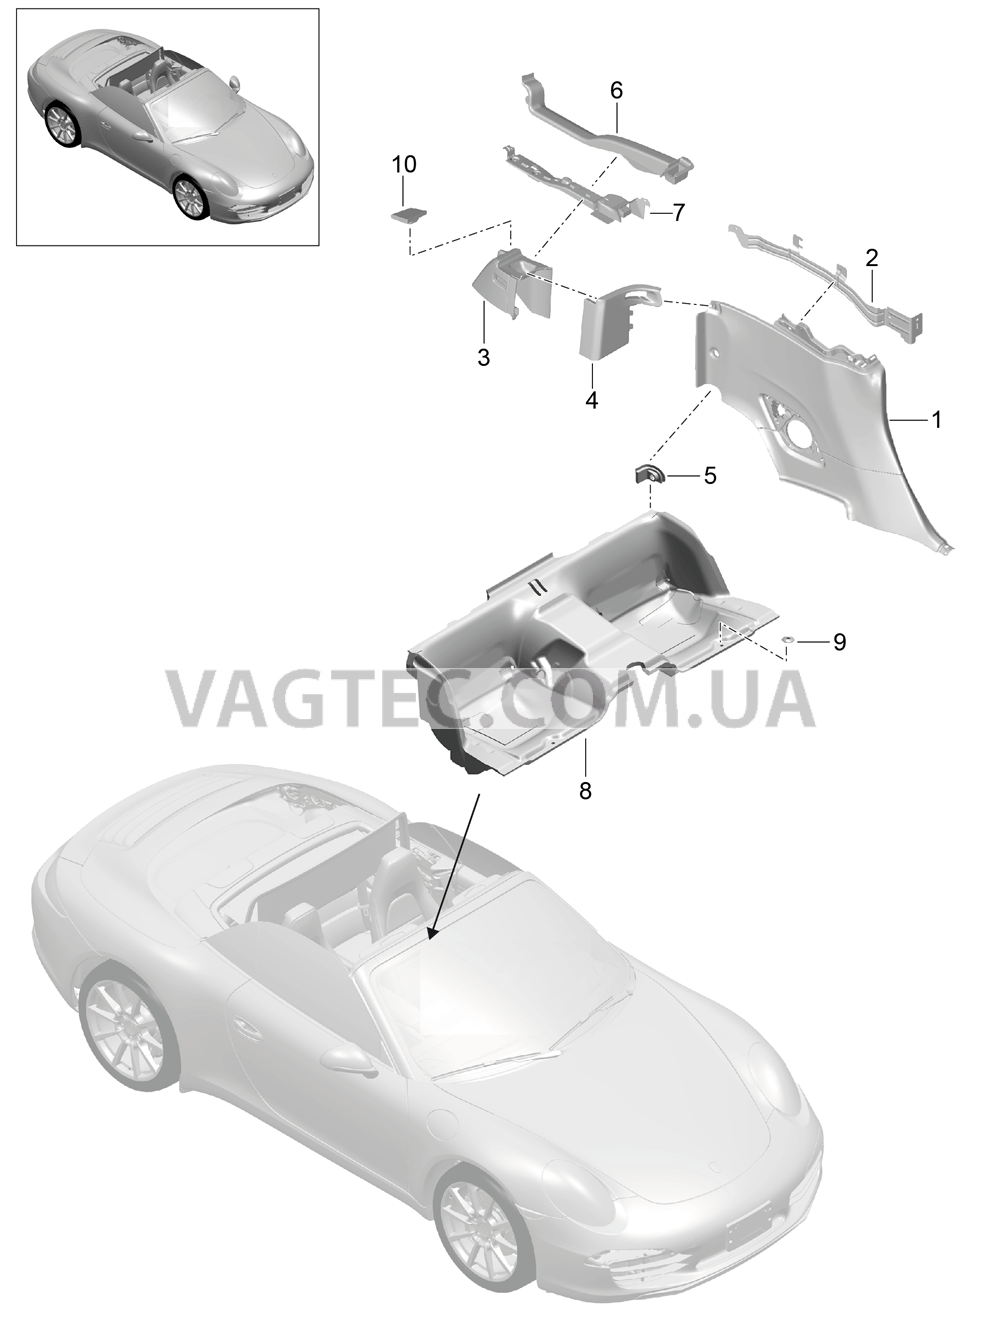 807-032 Обшивка бок.стенки, Задняя внутренняя стенка, Углубление для сиденья
						
						TARGA для PORSCHE 911.Carrera 2012-2016